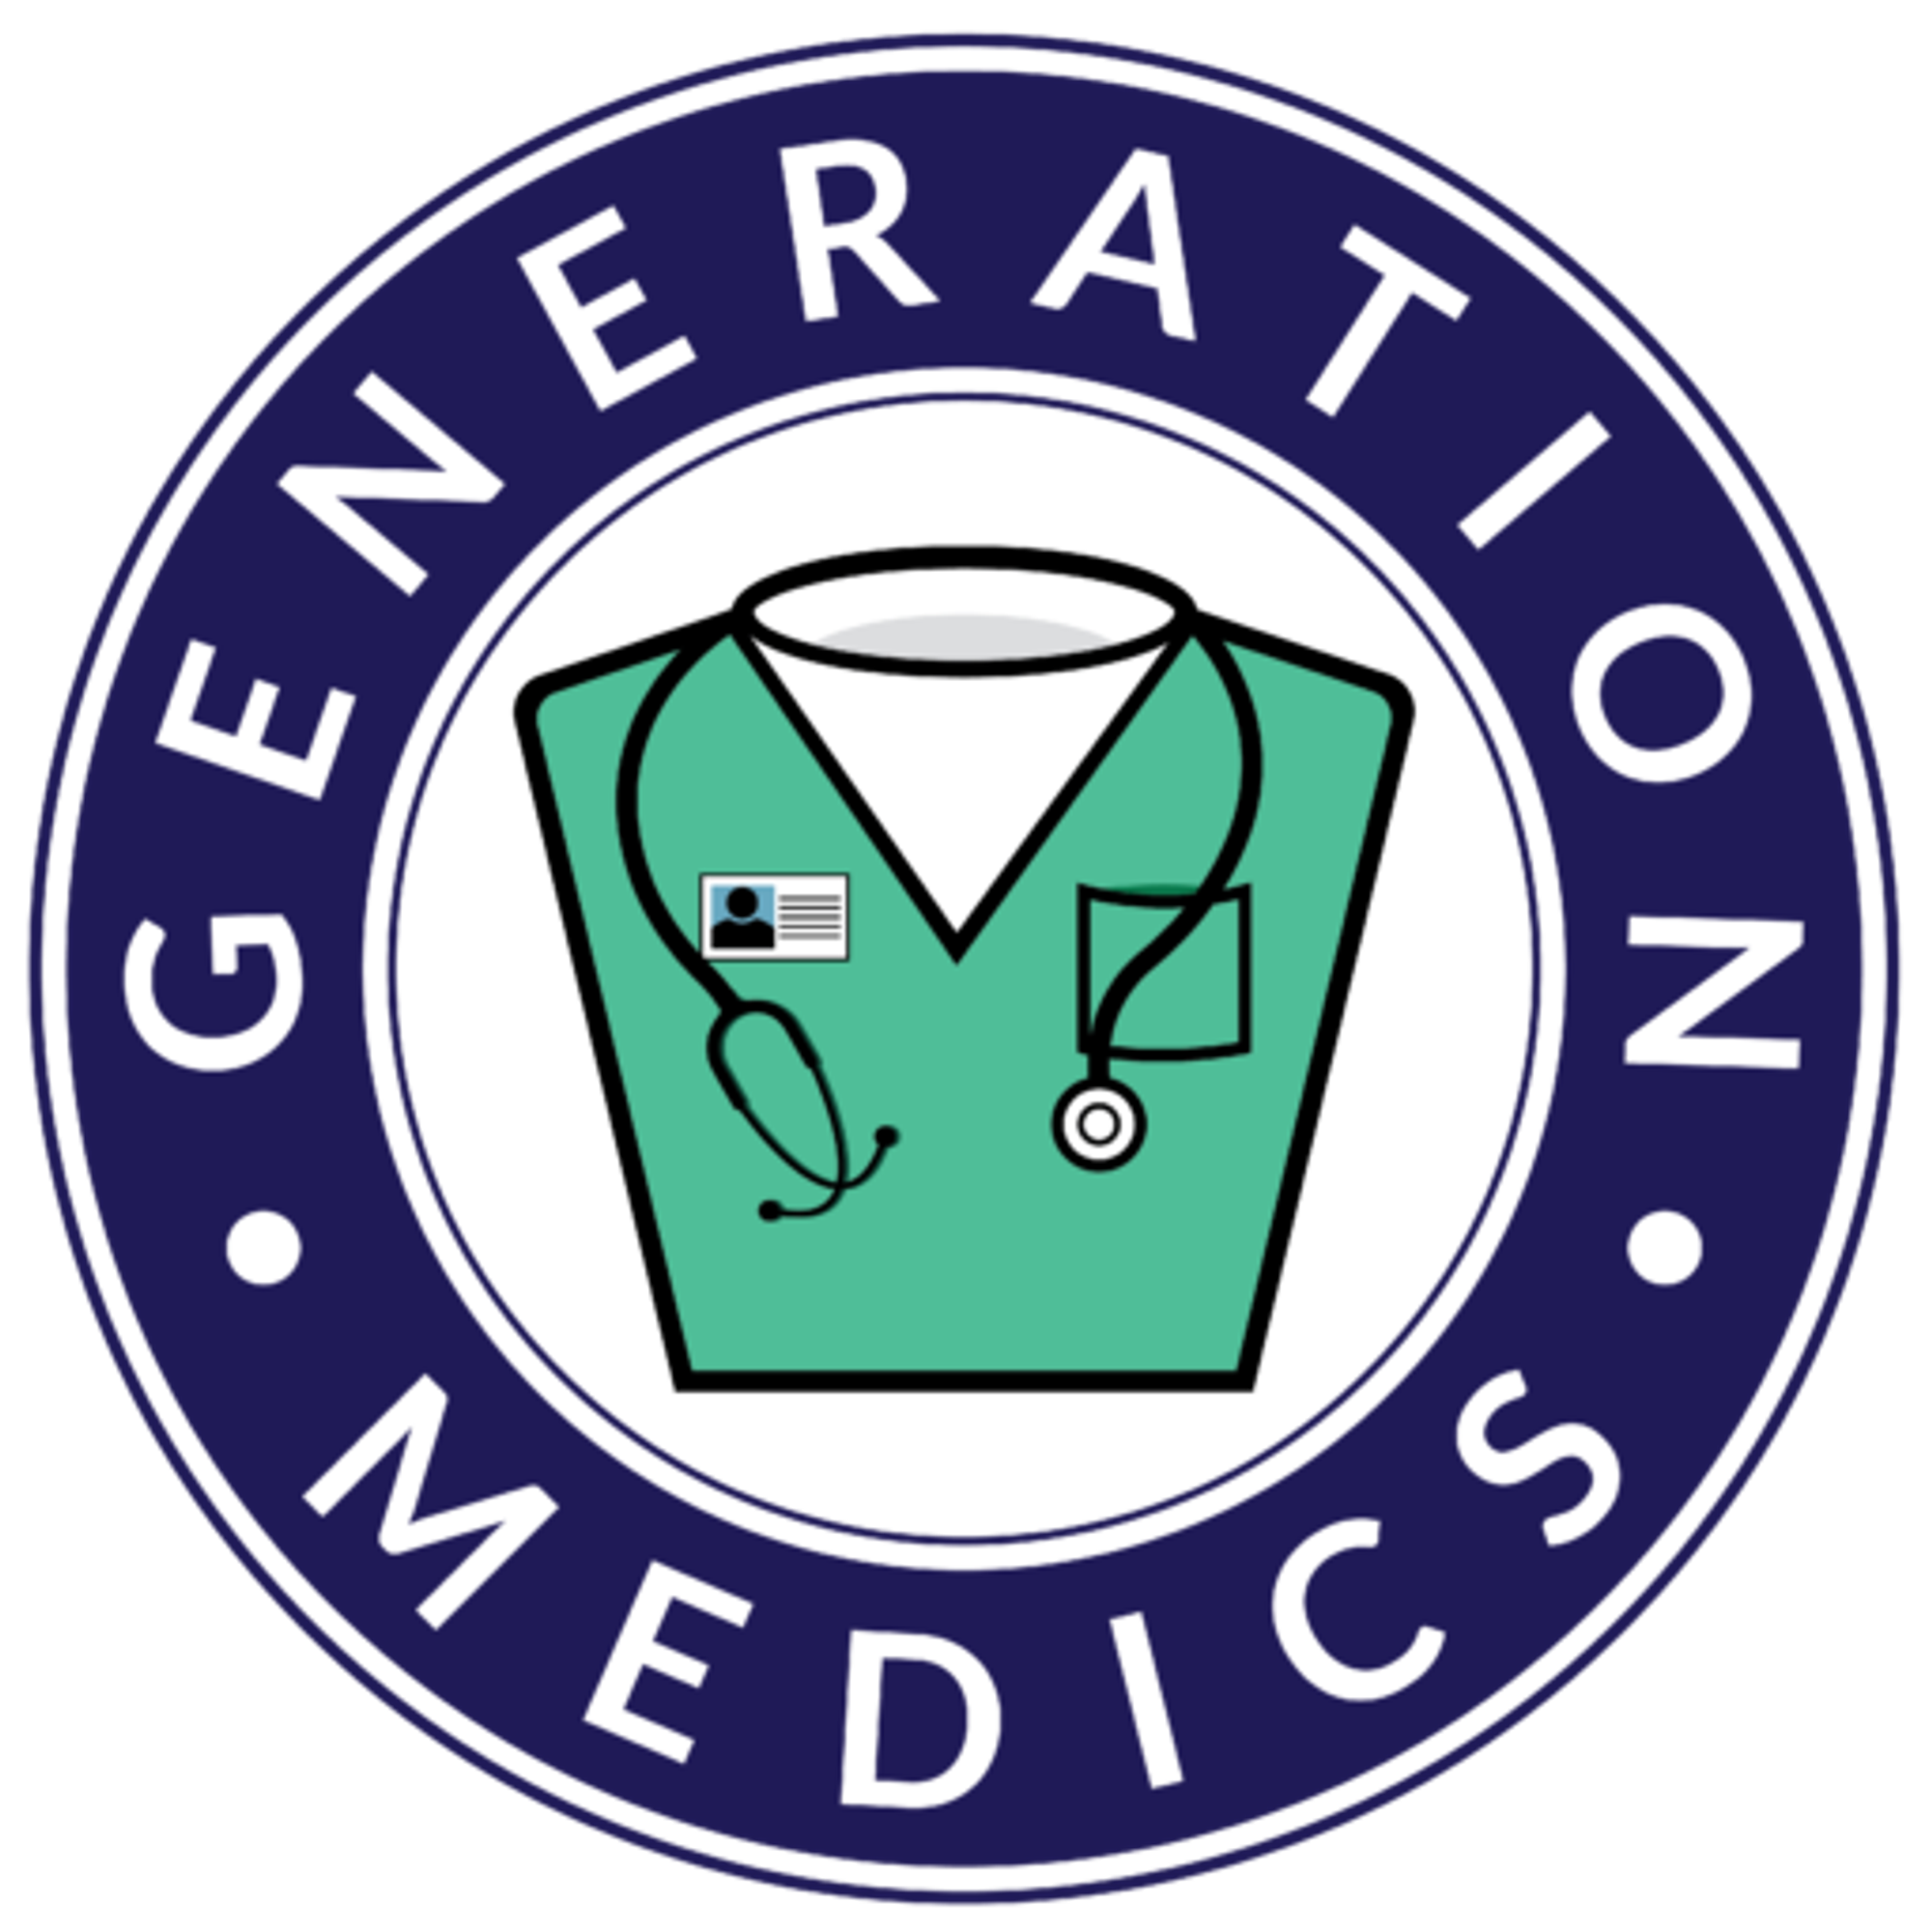 Generation Medics